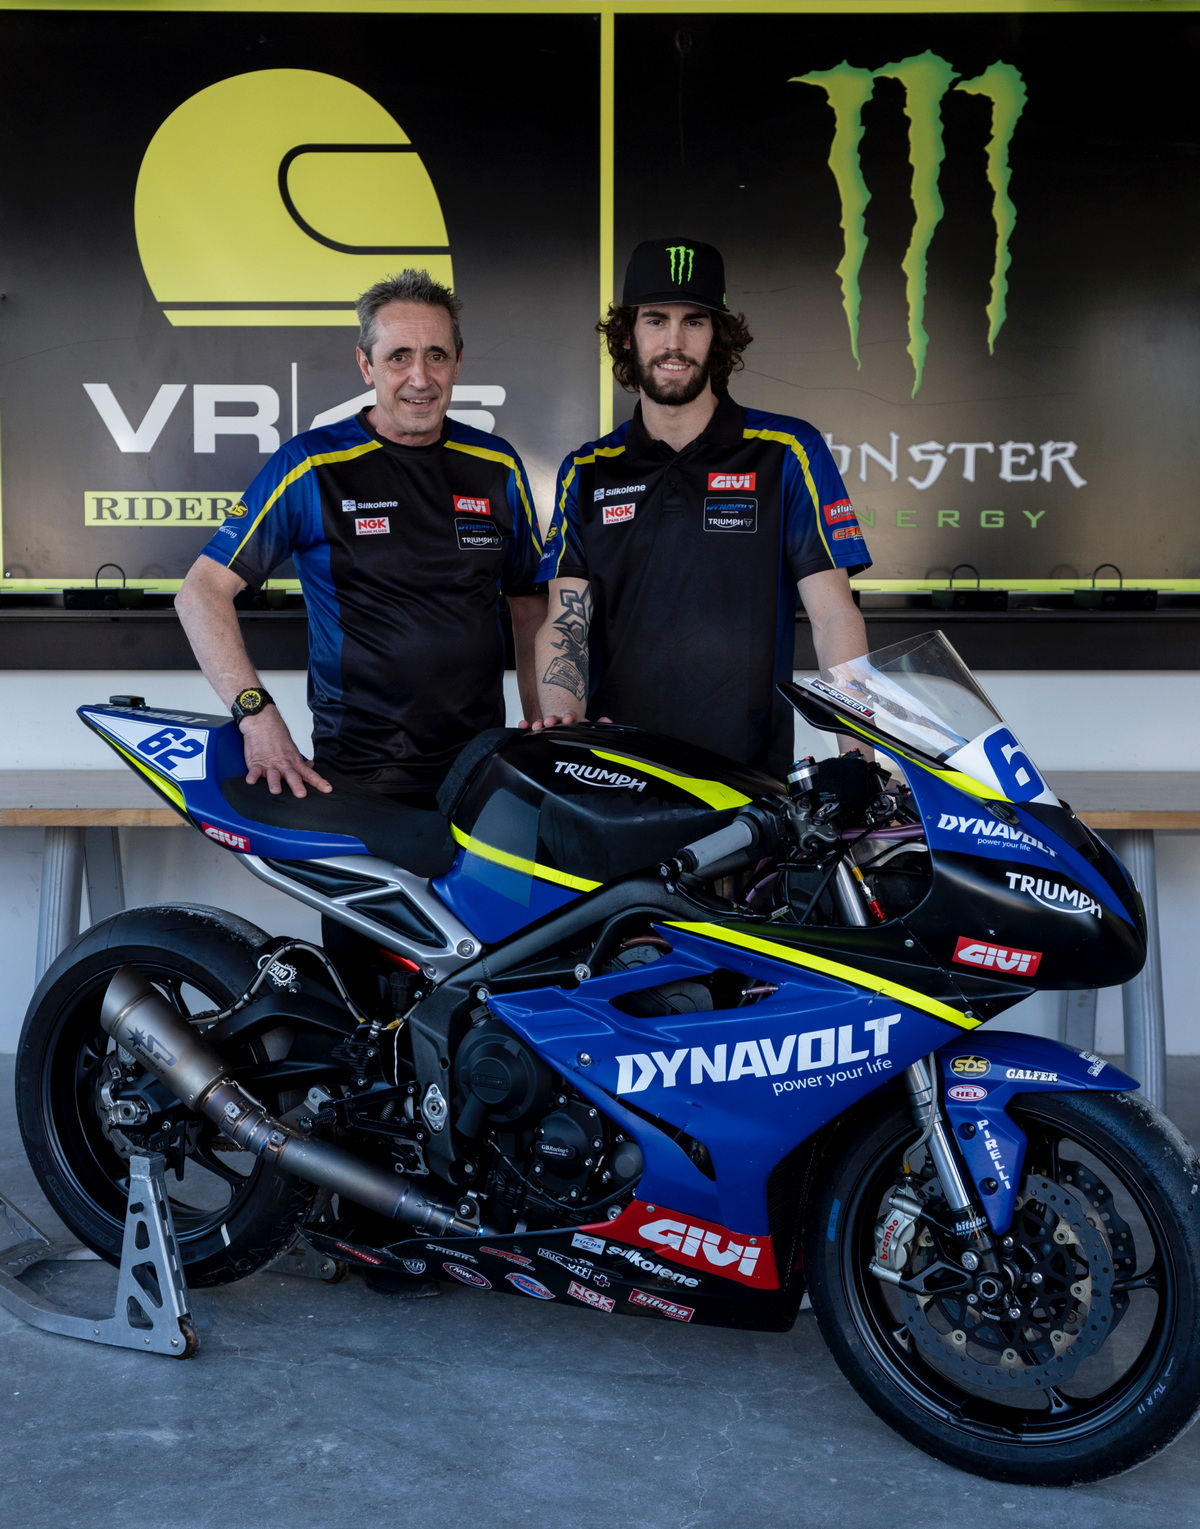 Стефано Манци вступает в World Supersport с заводской командой Triumph и при поддержке VR46 Riders Academy